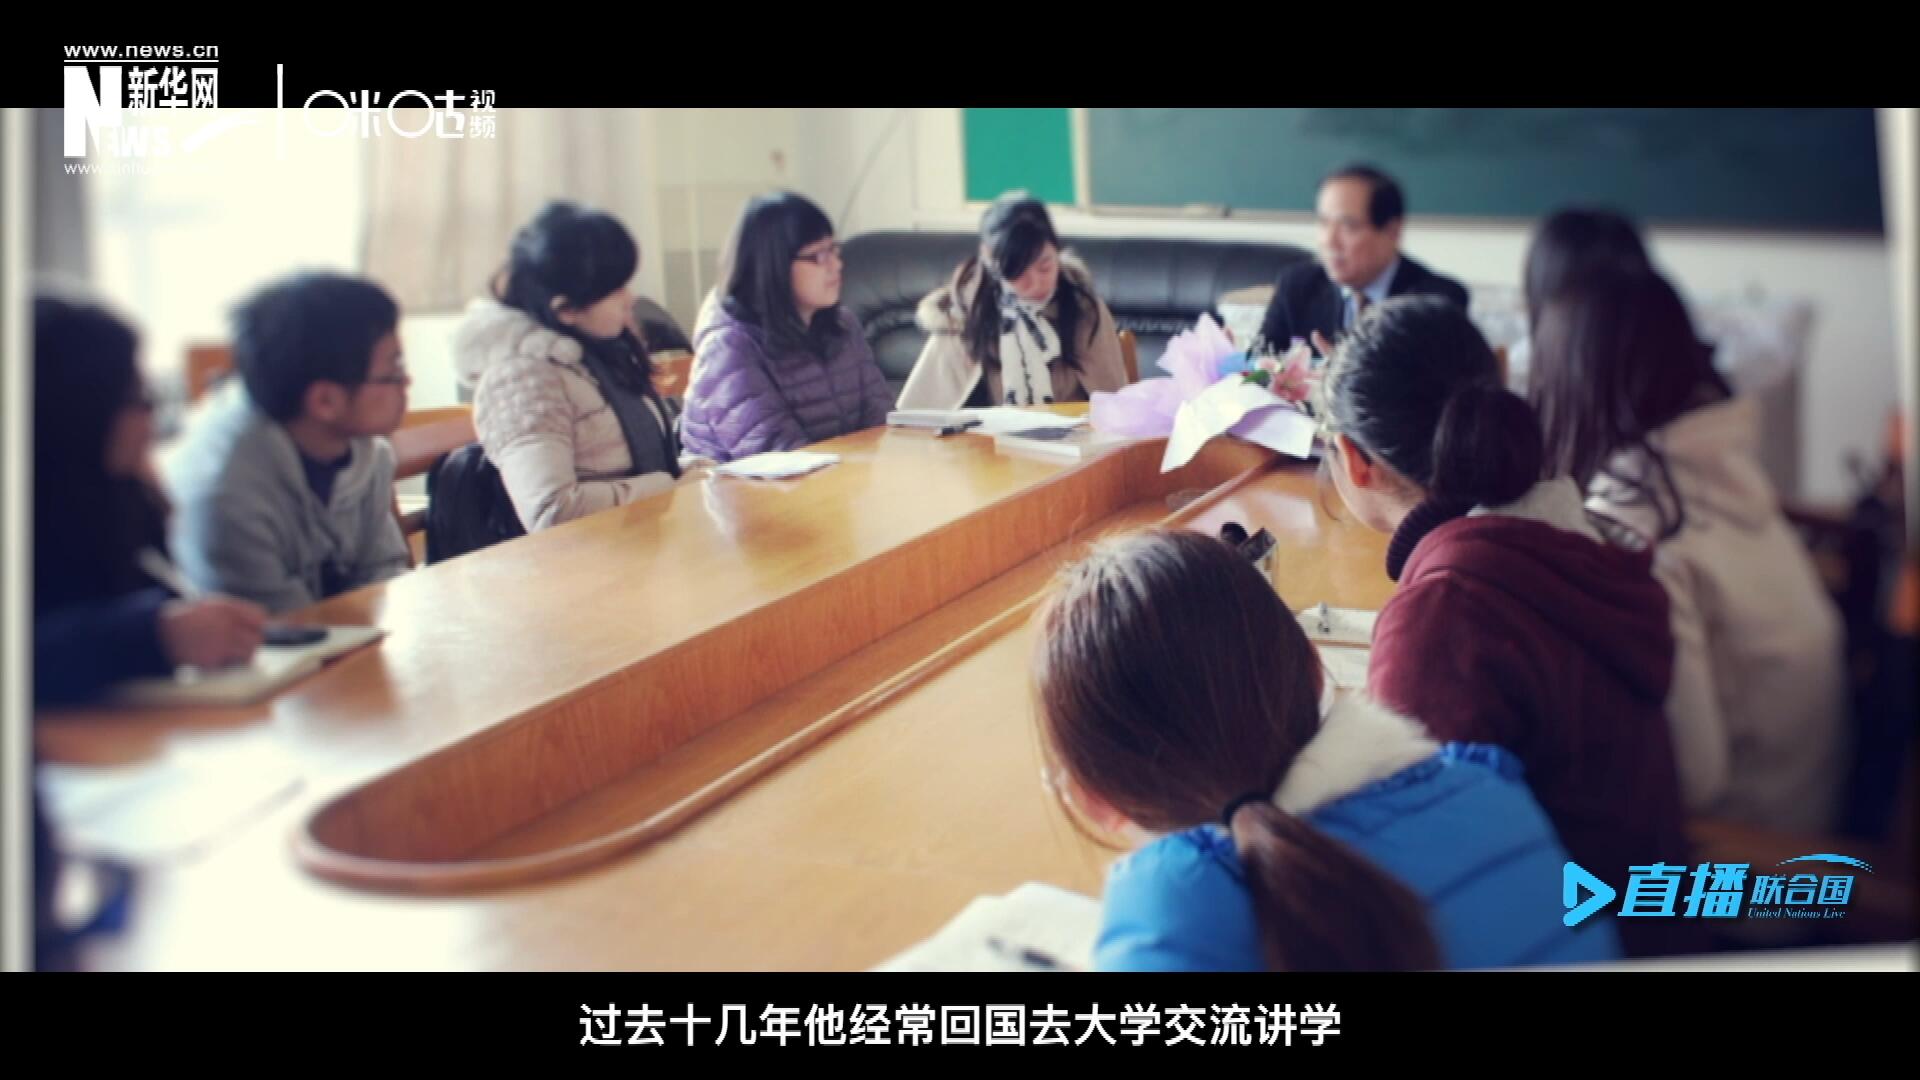 过去十几年陈峰经常回国去大学交流讲学，给年轻人分享他学习、工作和生活的故事。